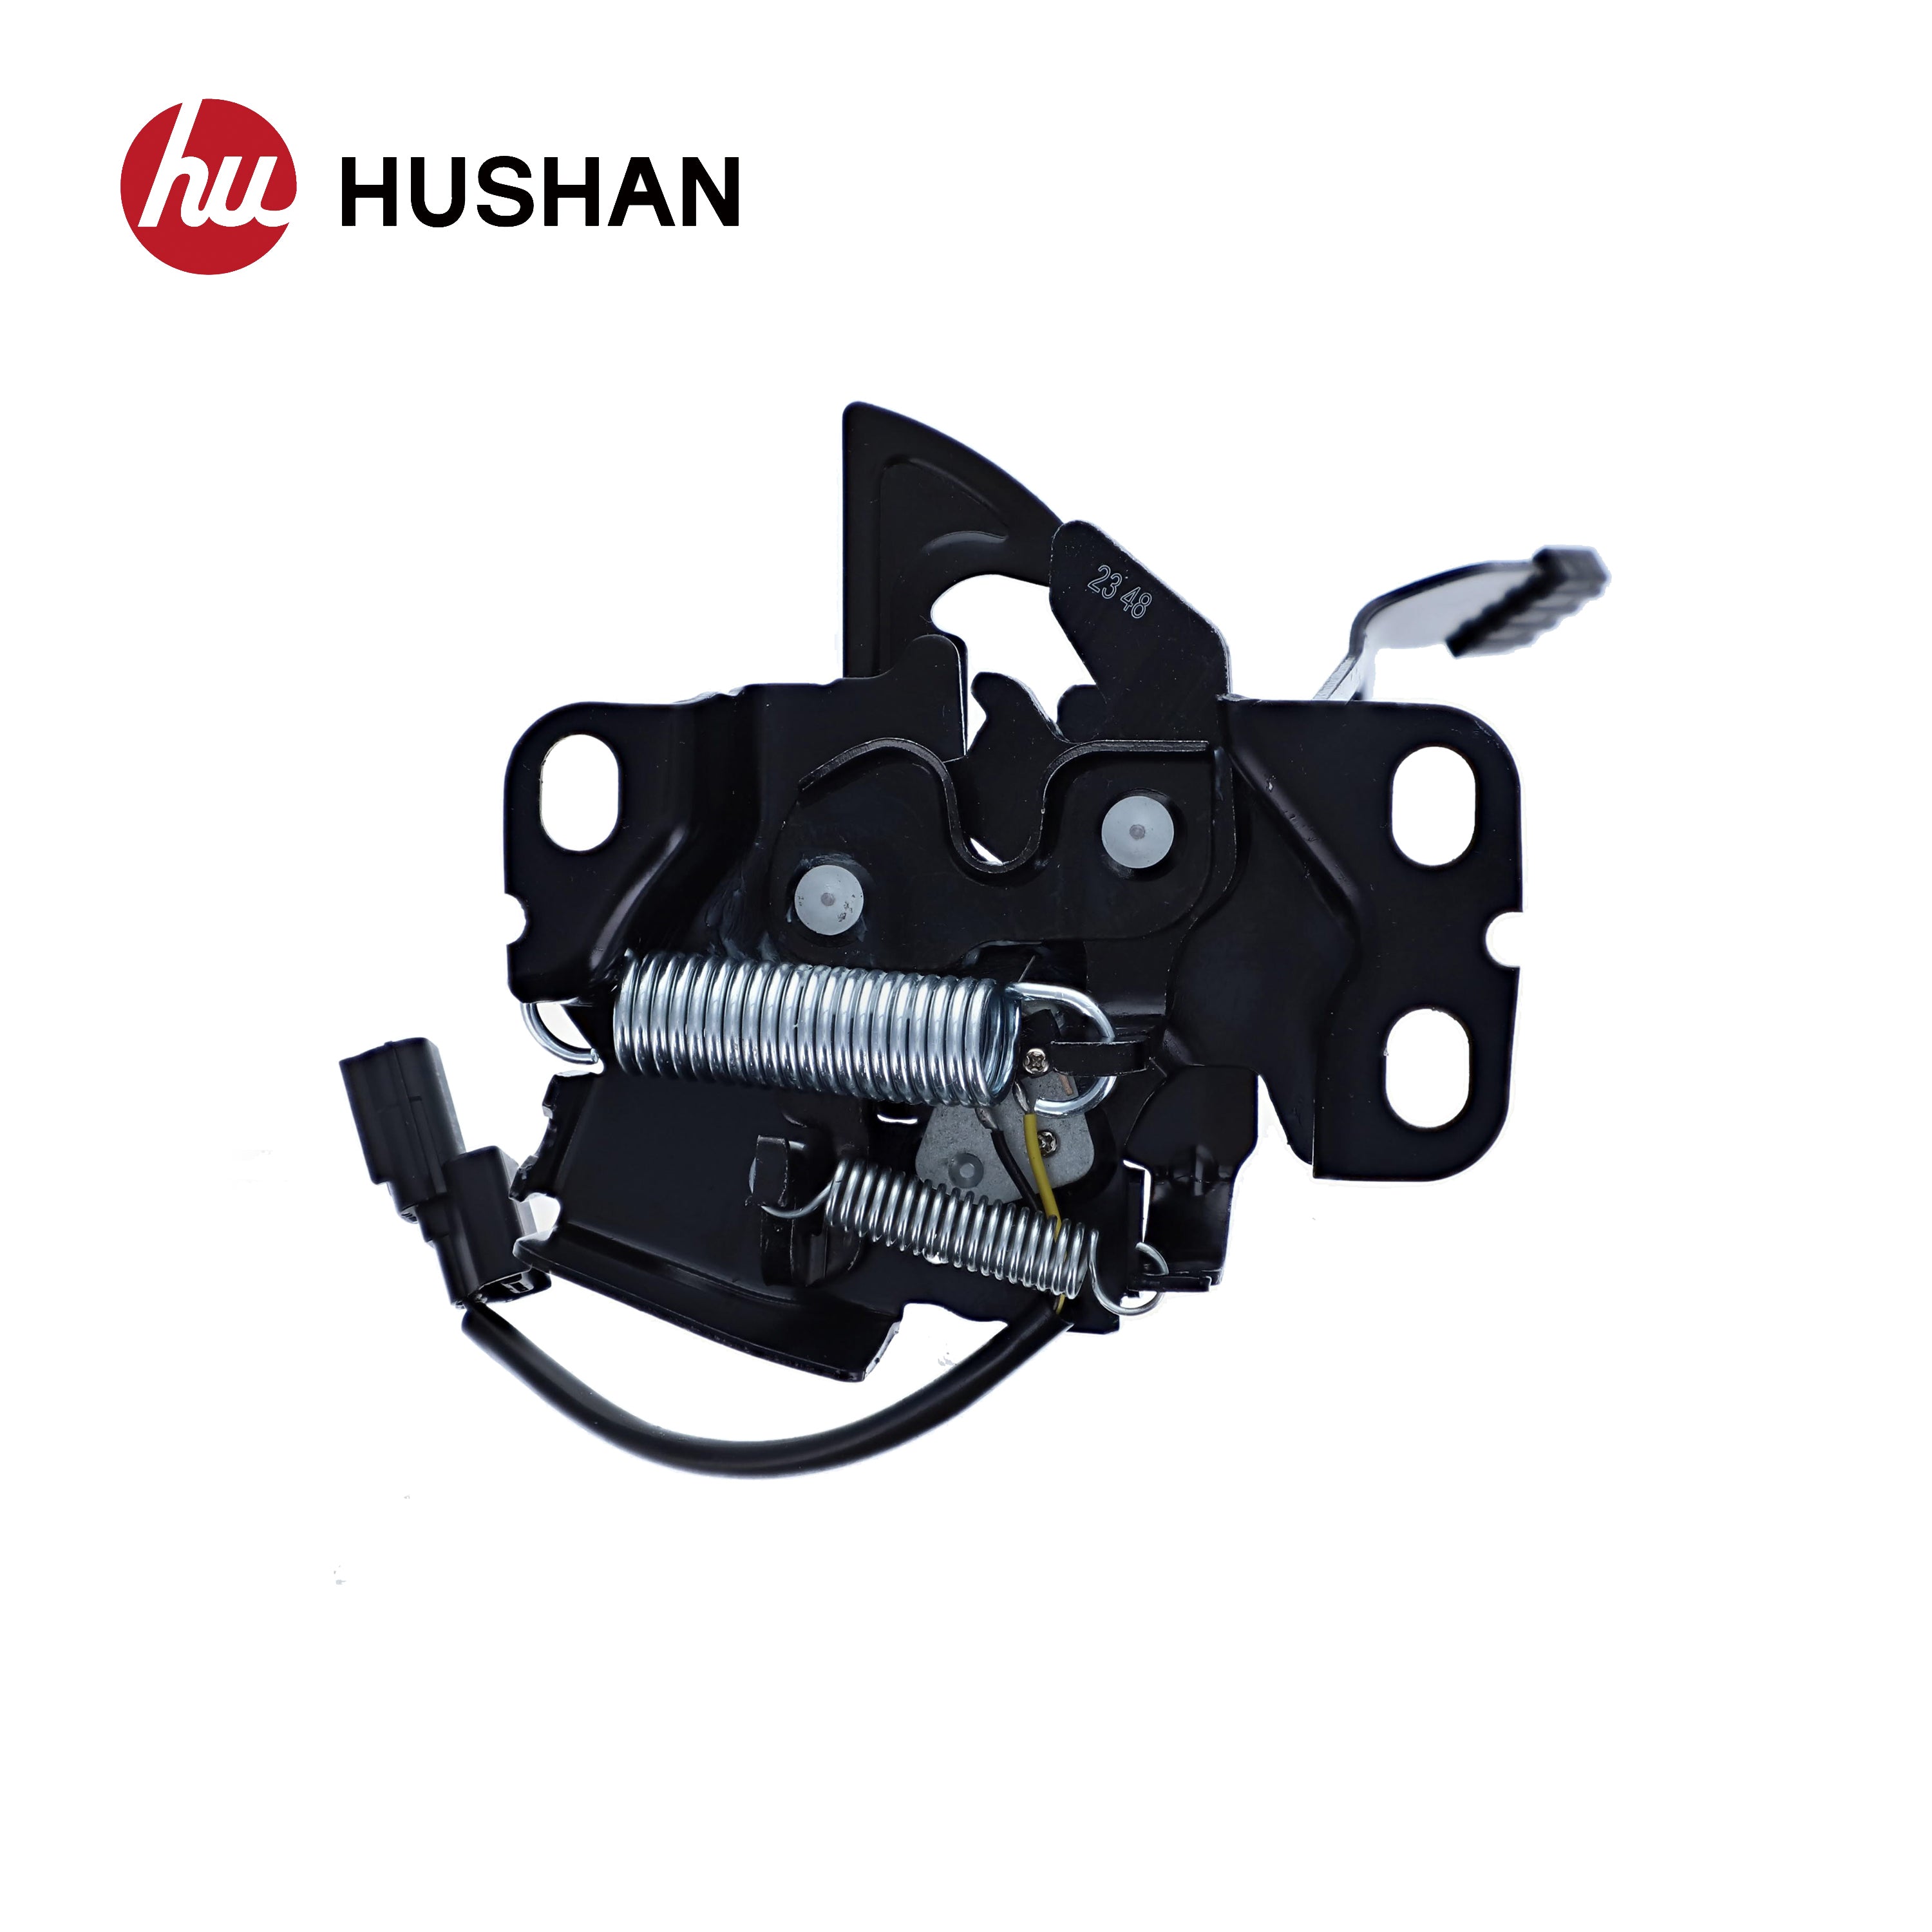 HU-HD4310-LHD